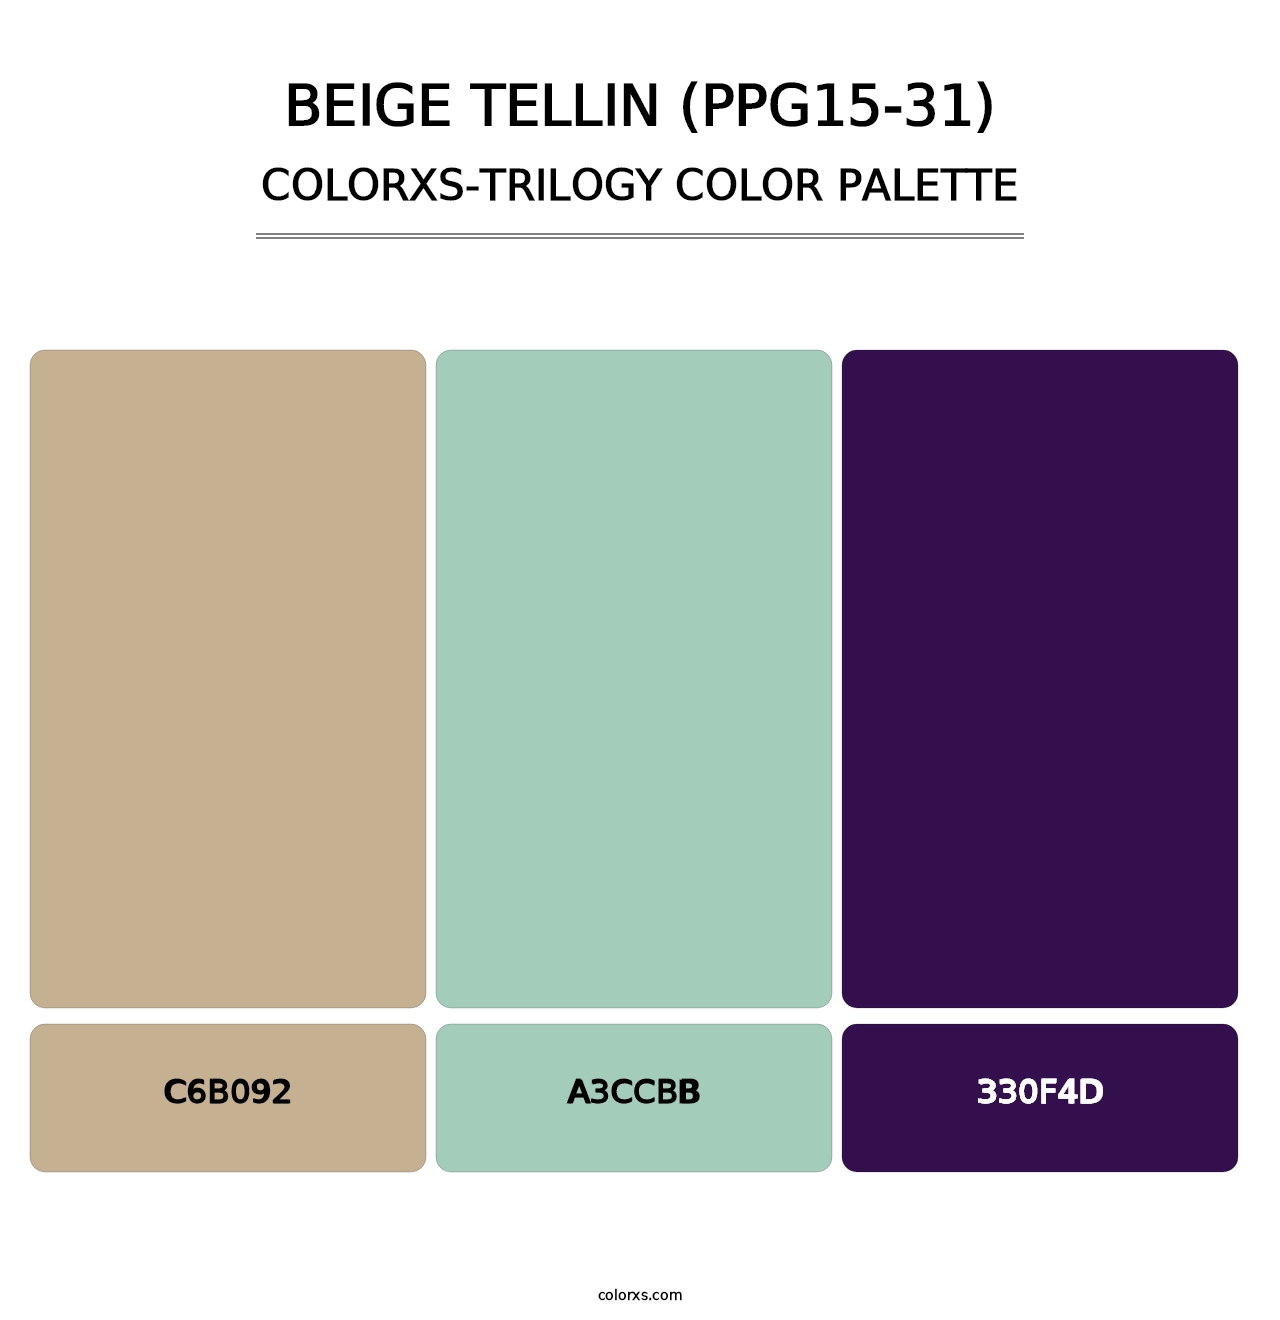 Beige Tellin (PPG15-31) - Colorxs Trilogy Palette